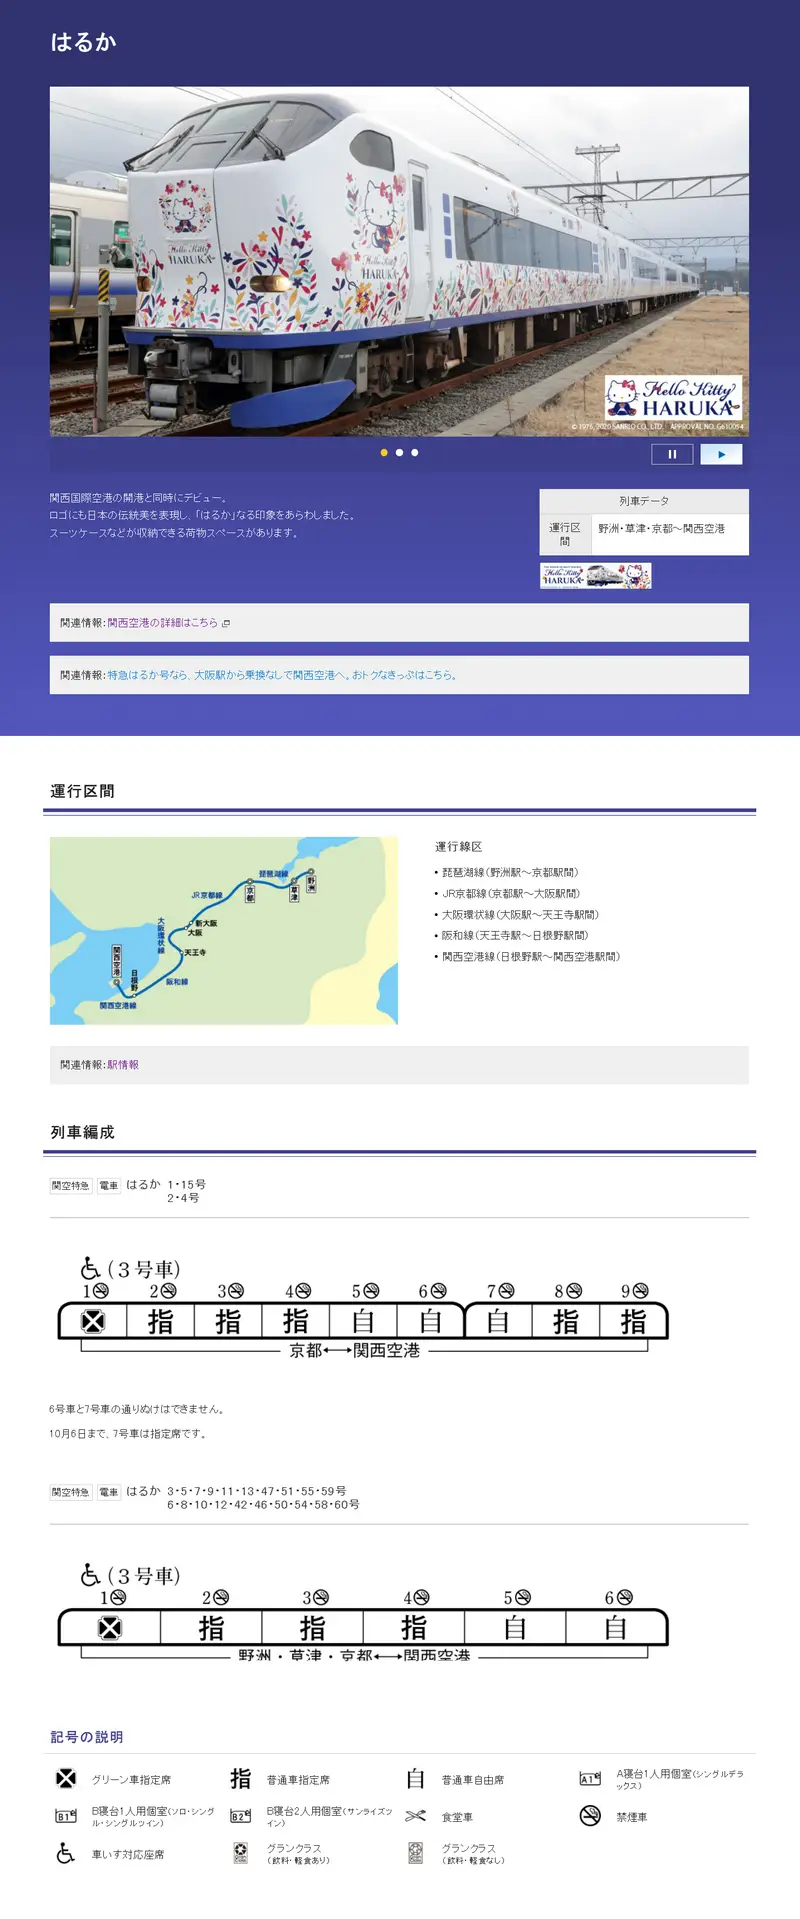 查詢JR西日本特急列車的車廂編制與路線